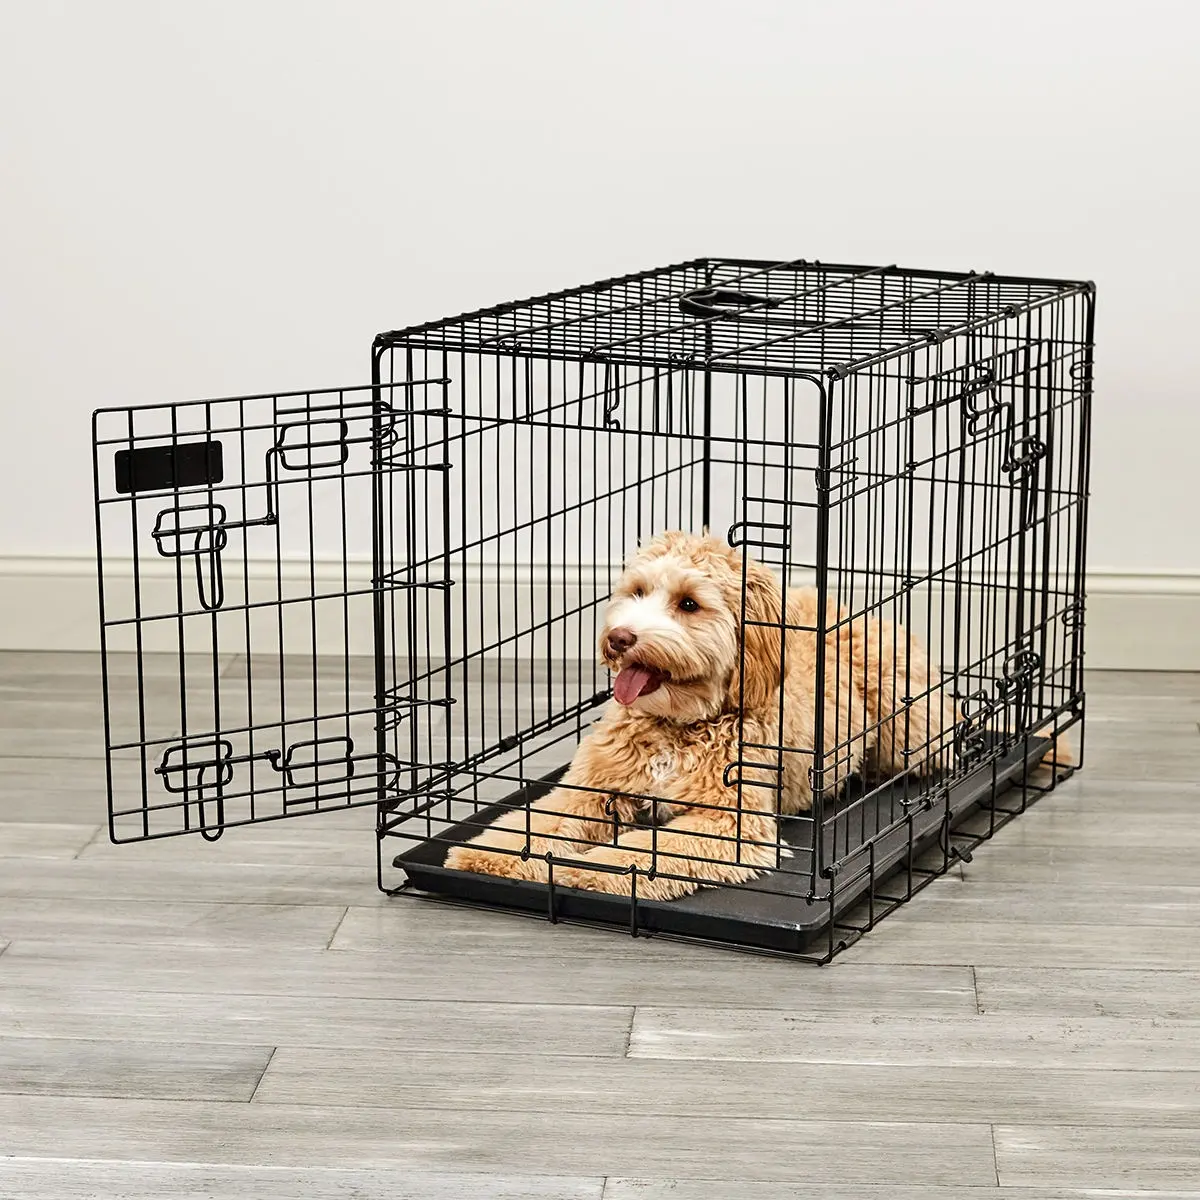 Taille personnalisée 42 ''48'' Grand chenil pour animaux de compagnie Cage à double porte en fil d'acier Caisse pour chien